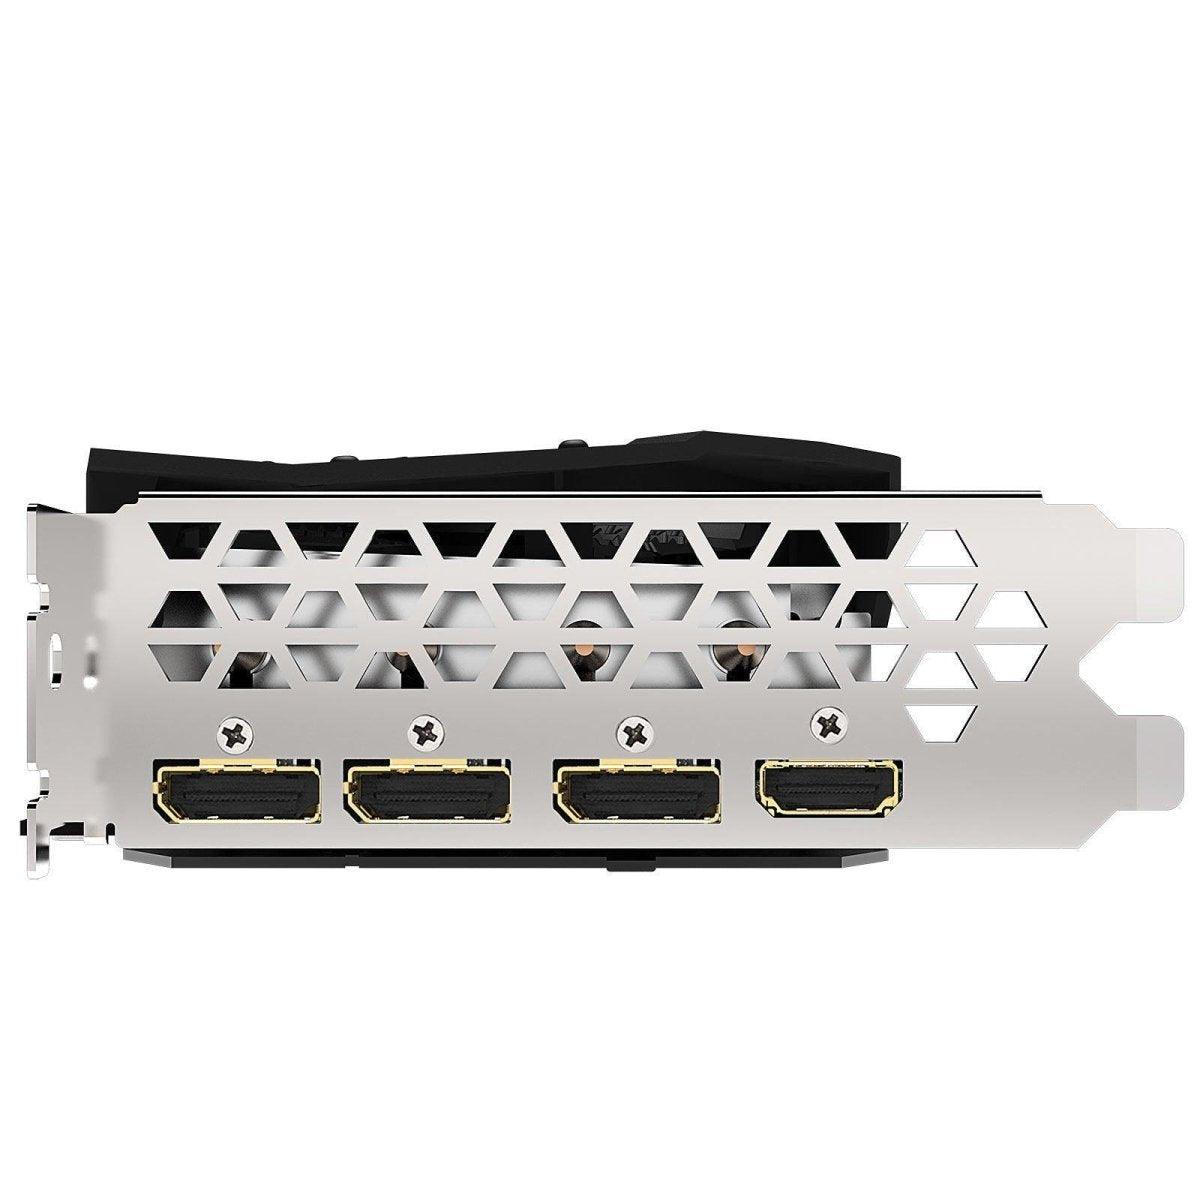 Gigabyte Radeon RX 5600 XT GAMING OC 6G - GDDR6 - HDMI/Tri DisplayPort - PCI Express (AMD Radeon RX 5600 XT) - Smartmarket.ma